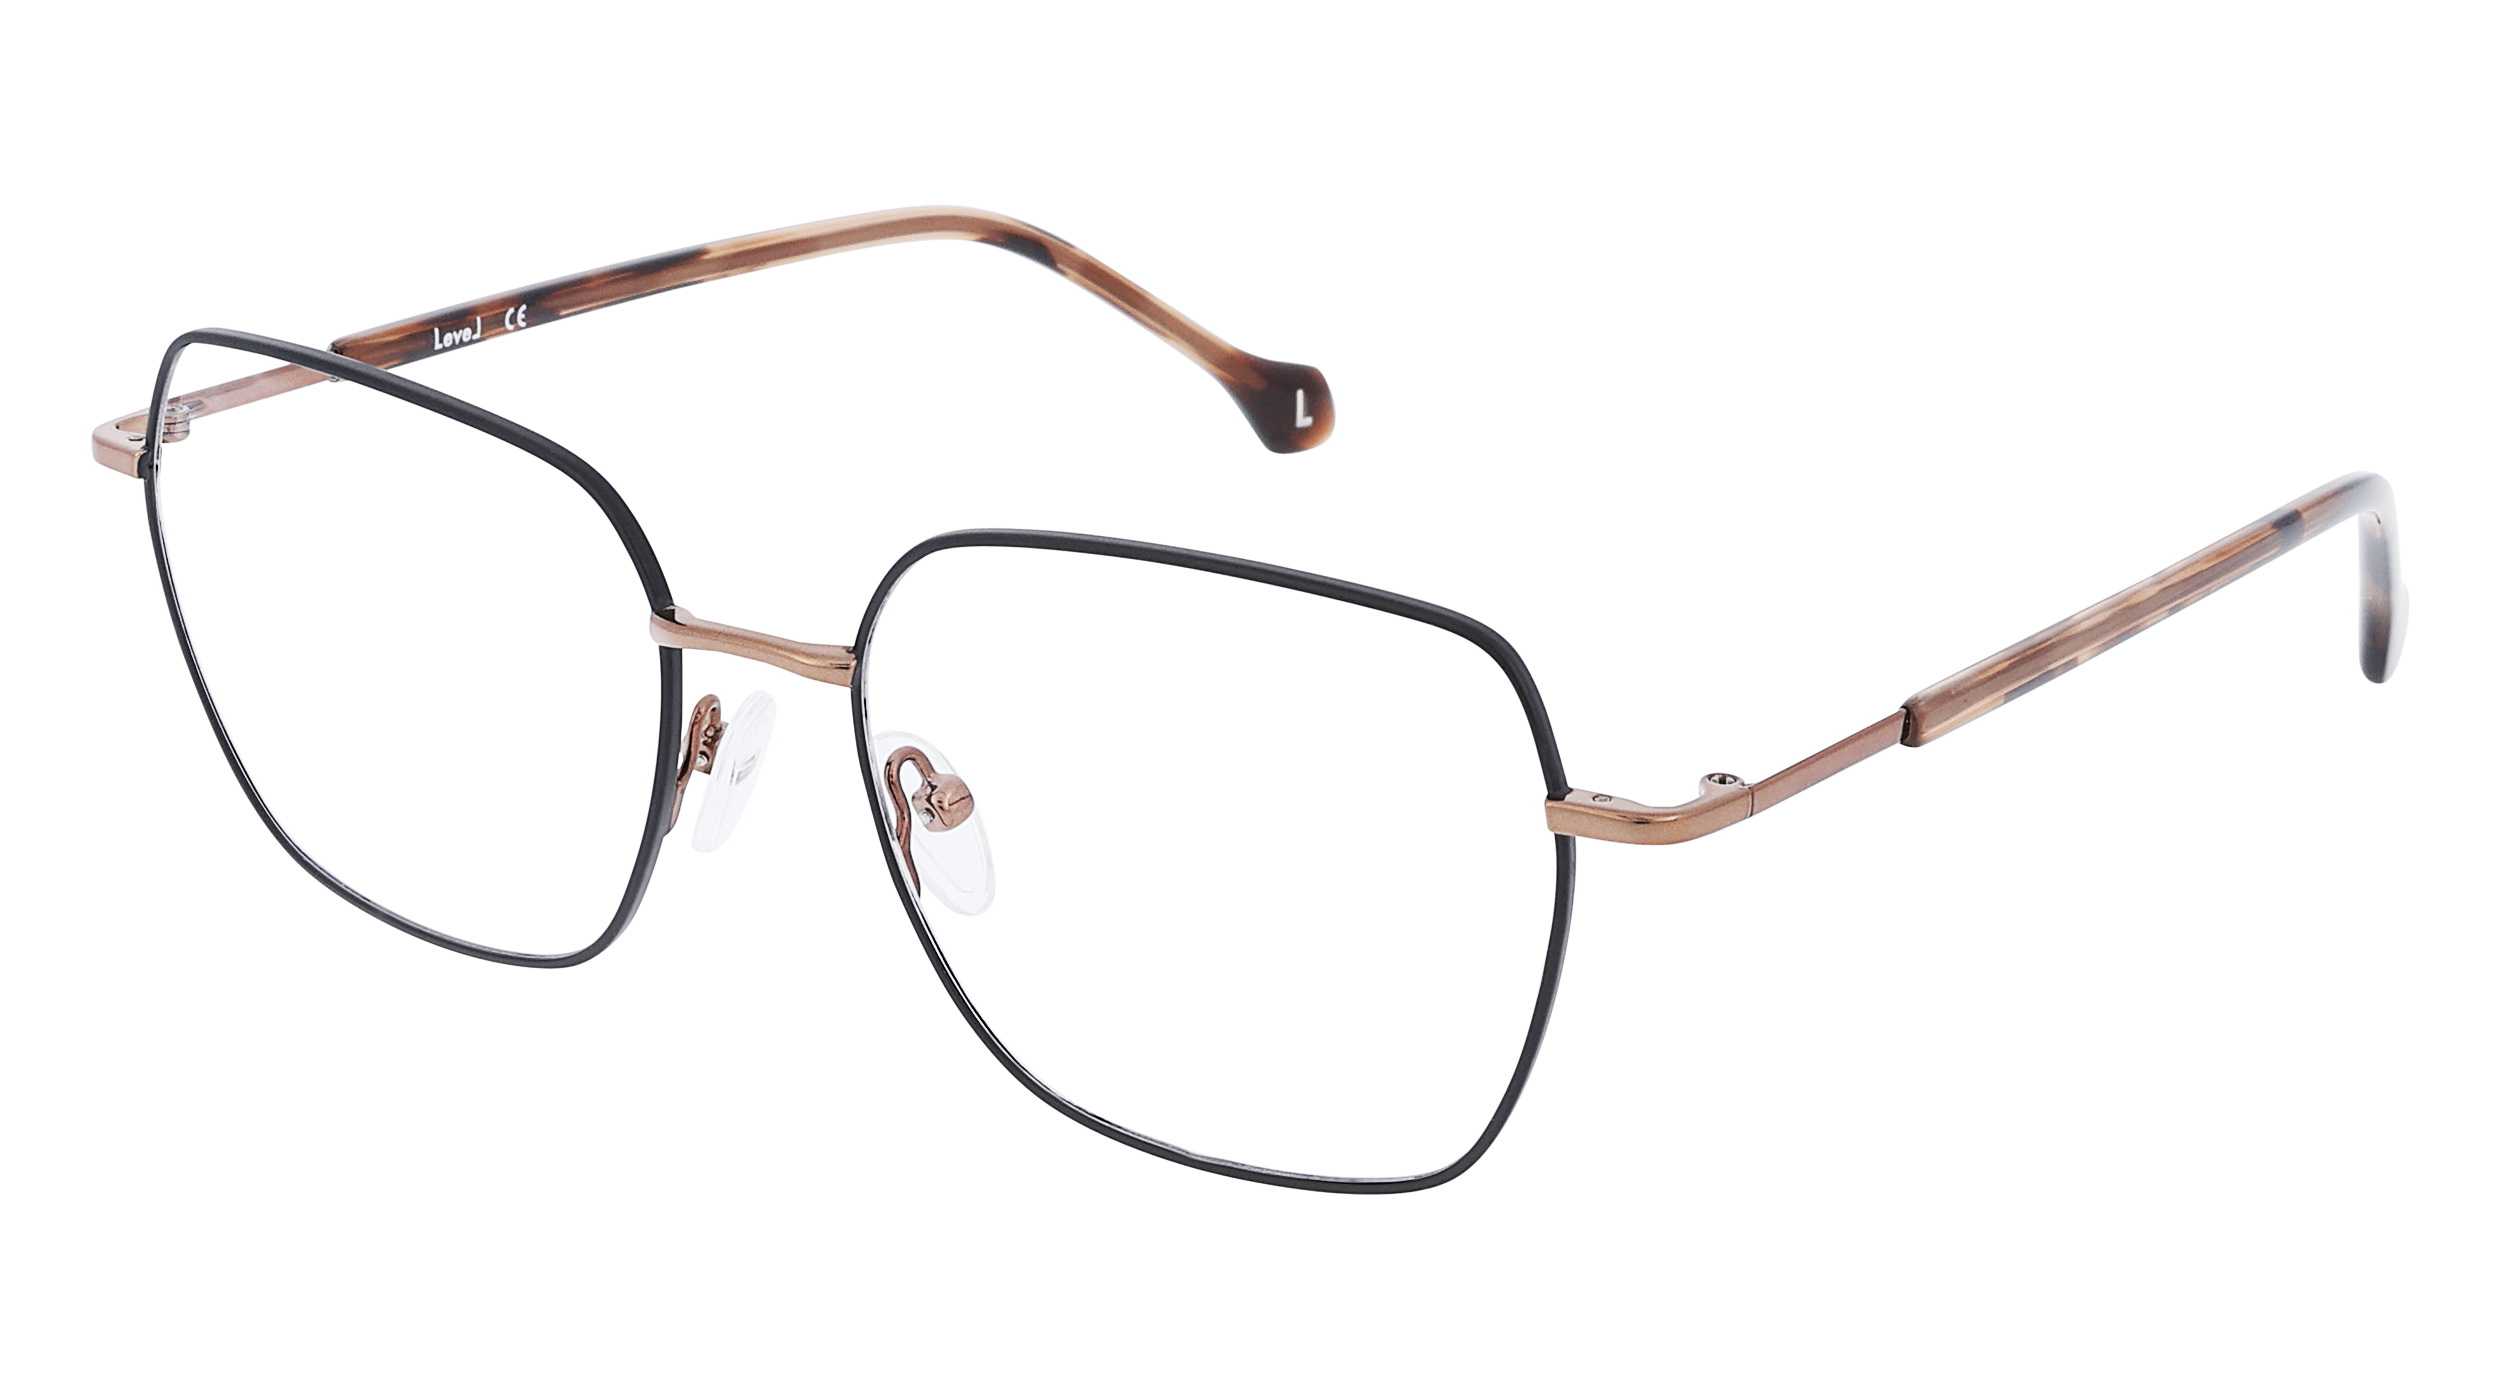 lunettes-de-vue-level-le-2257-noma-54-14-femme-marron-brillant-noir